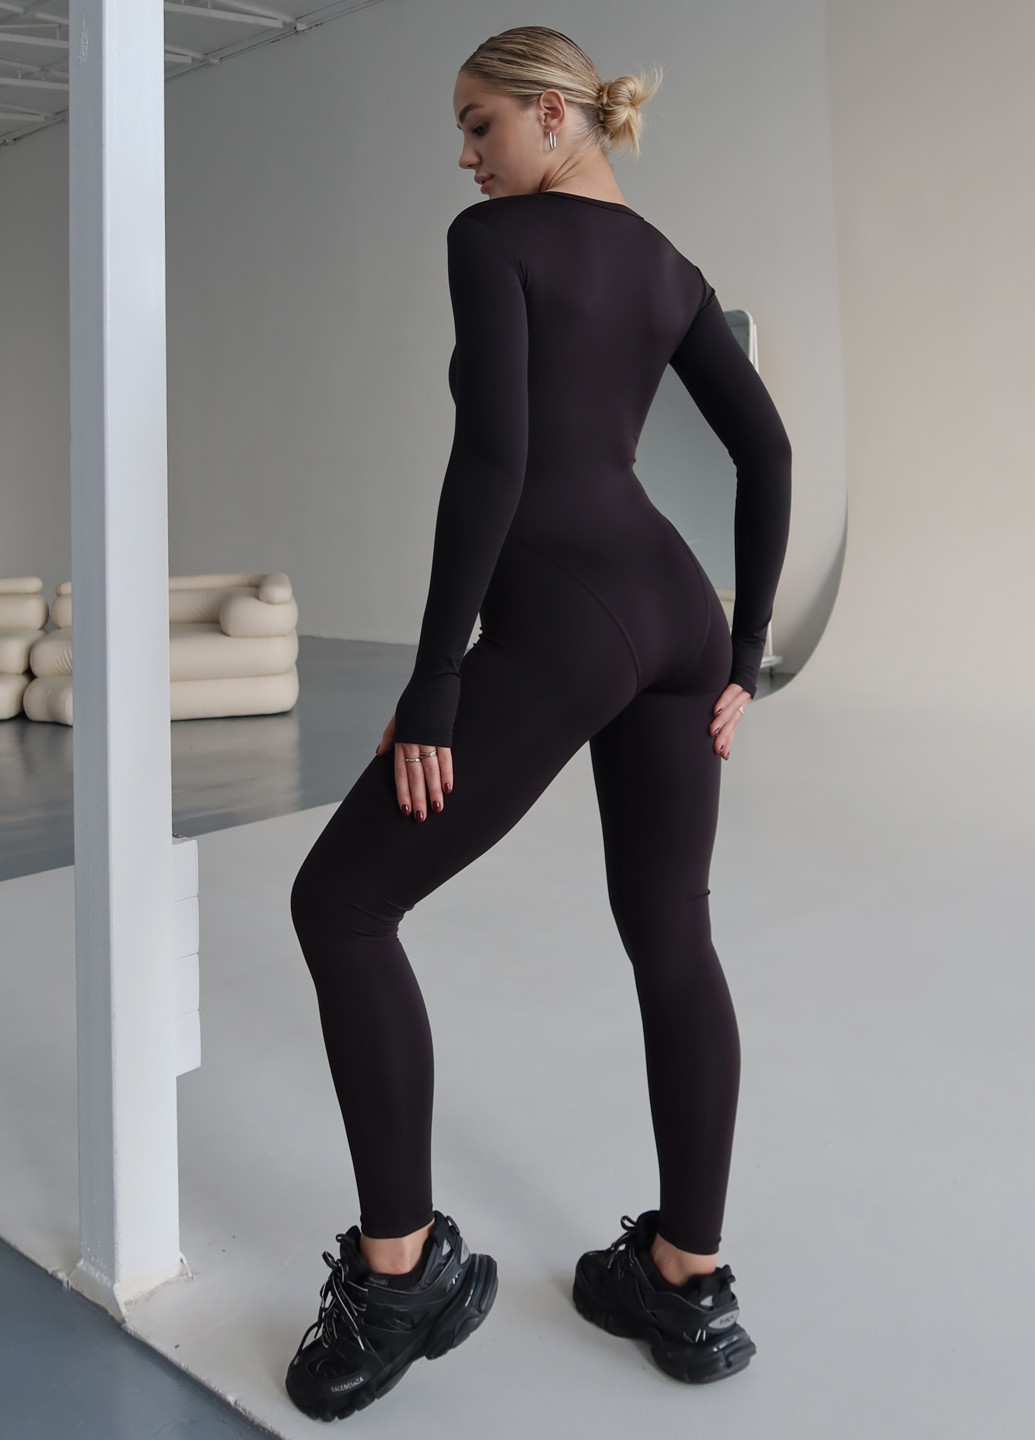 Комбинезон Asalart комбинезон-брюки однотонный чёрный спортивный нейлон, трикотаж